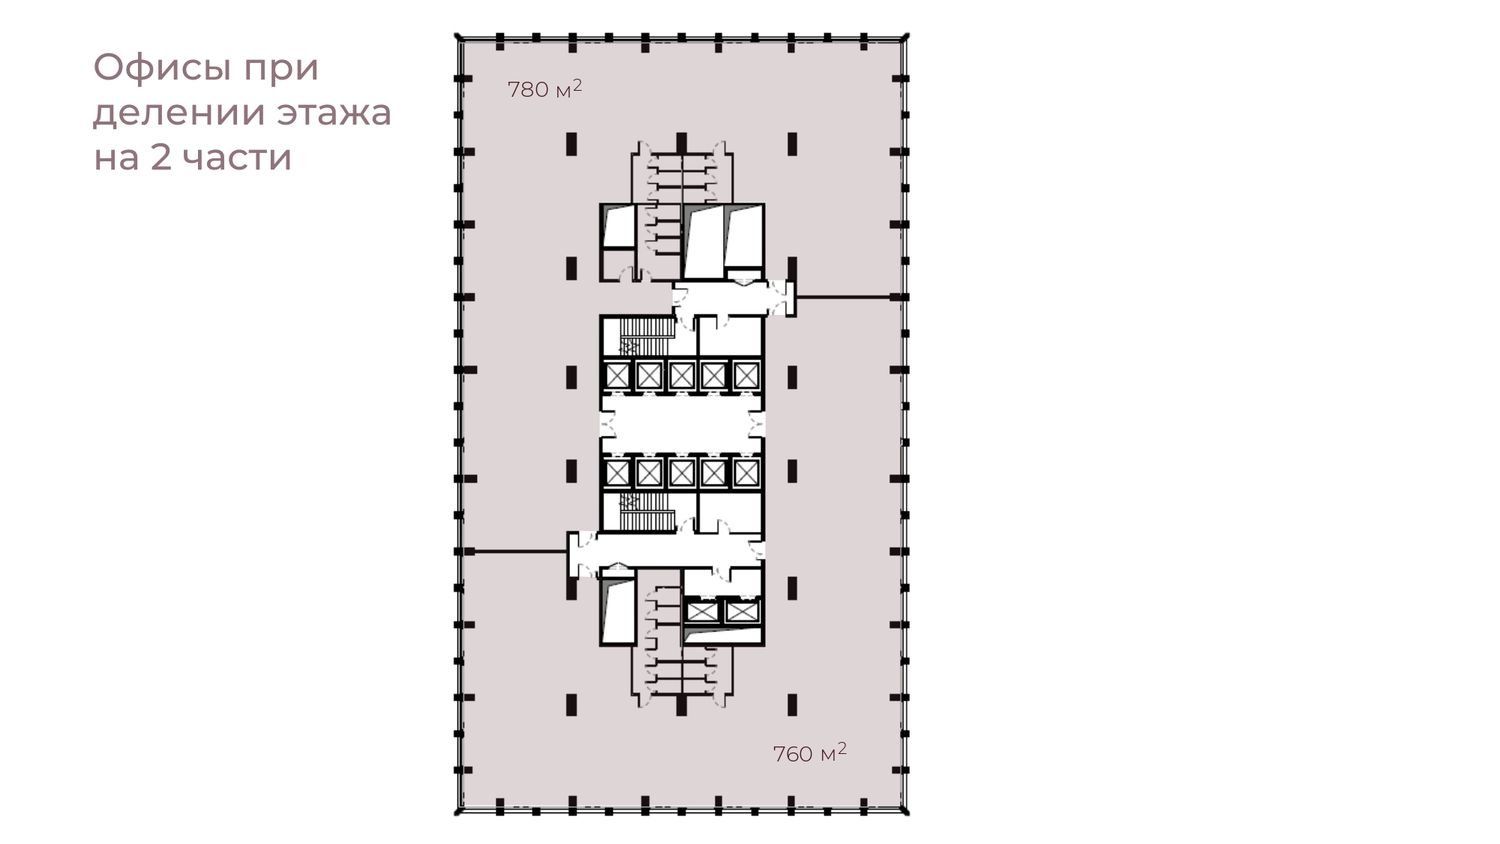 Реализация этажа целиком_офисы при делении на 2 части_page-0002